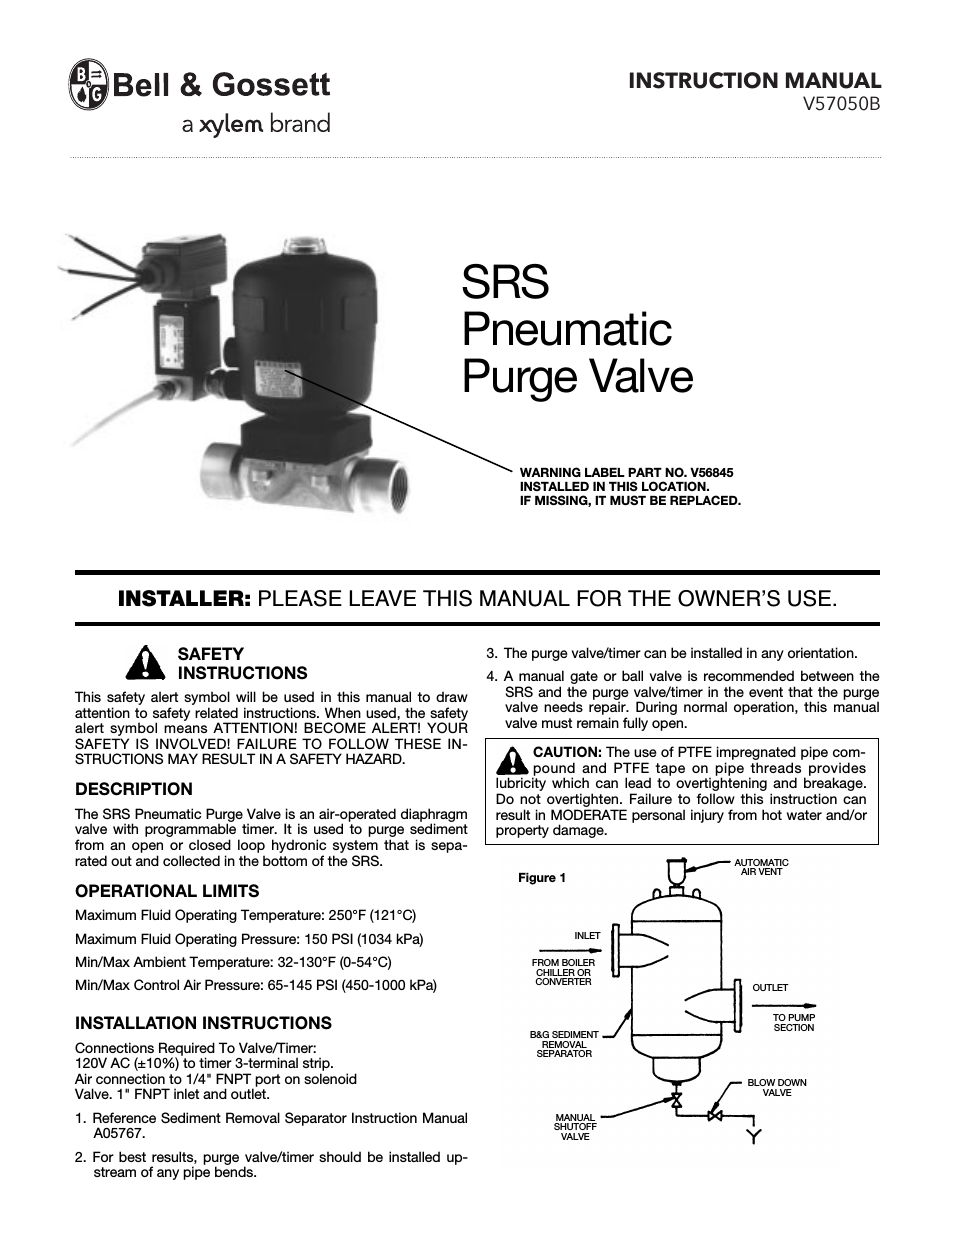 V57050B SRS Pneumatic Purge Valve